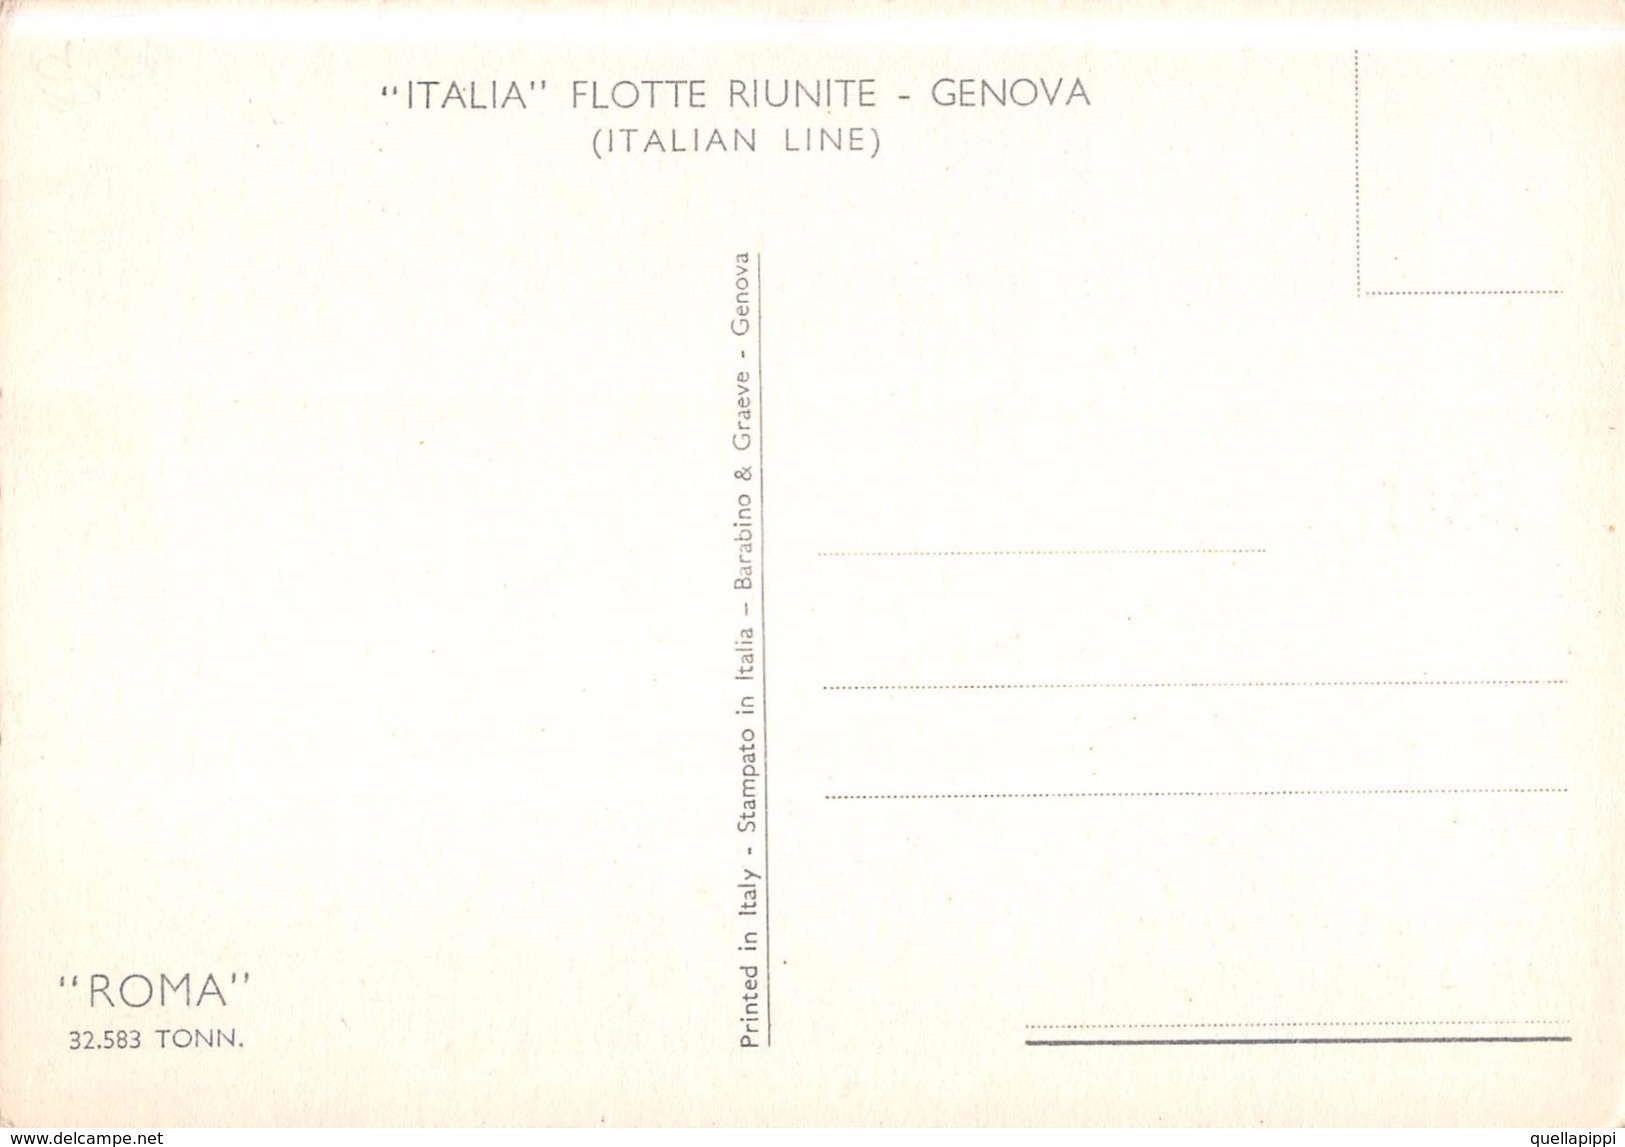 05423 "MOTONAVE ROMA - 32583 TONN - ITALIA FLOTTE RIUNITE - GENOVA"  CART NON SPED - Banks